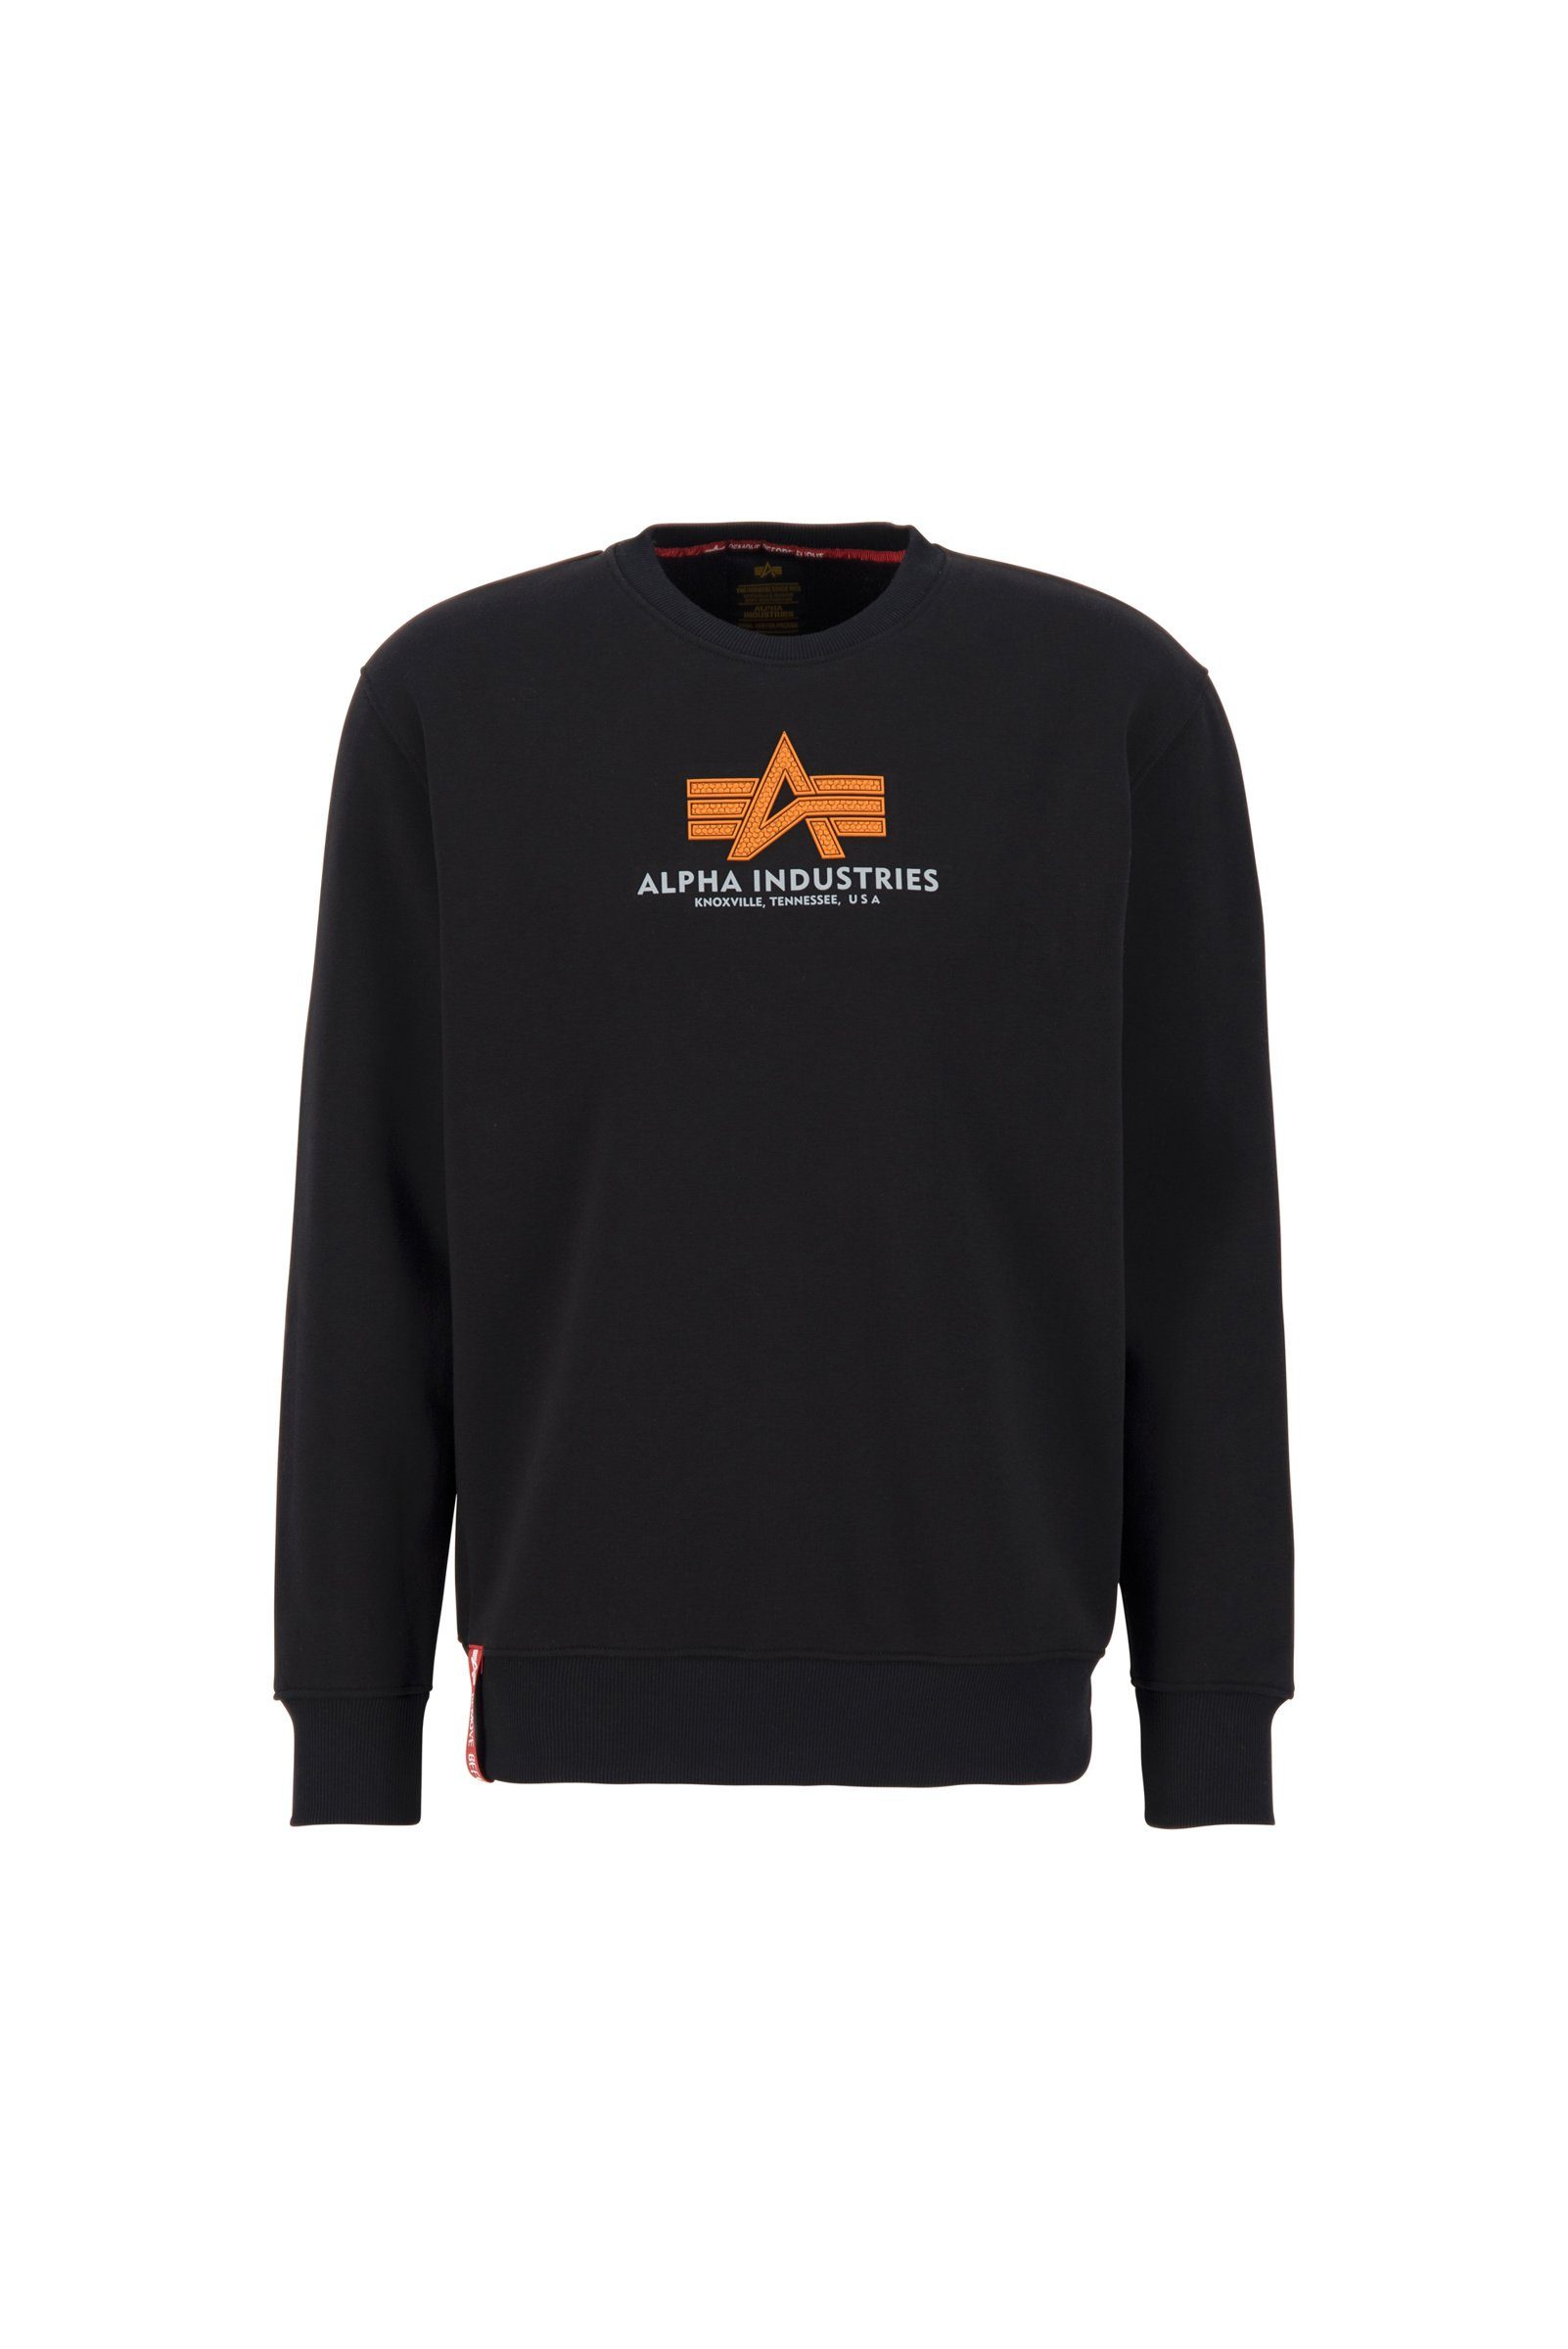 Rubber Sweatshirt Basic Alpha Sweatshirt Industries black Alpha Herren Industries